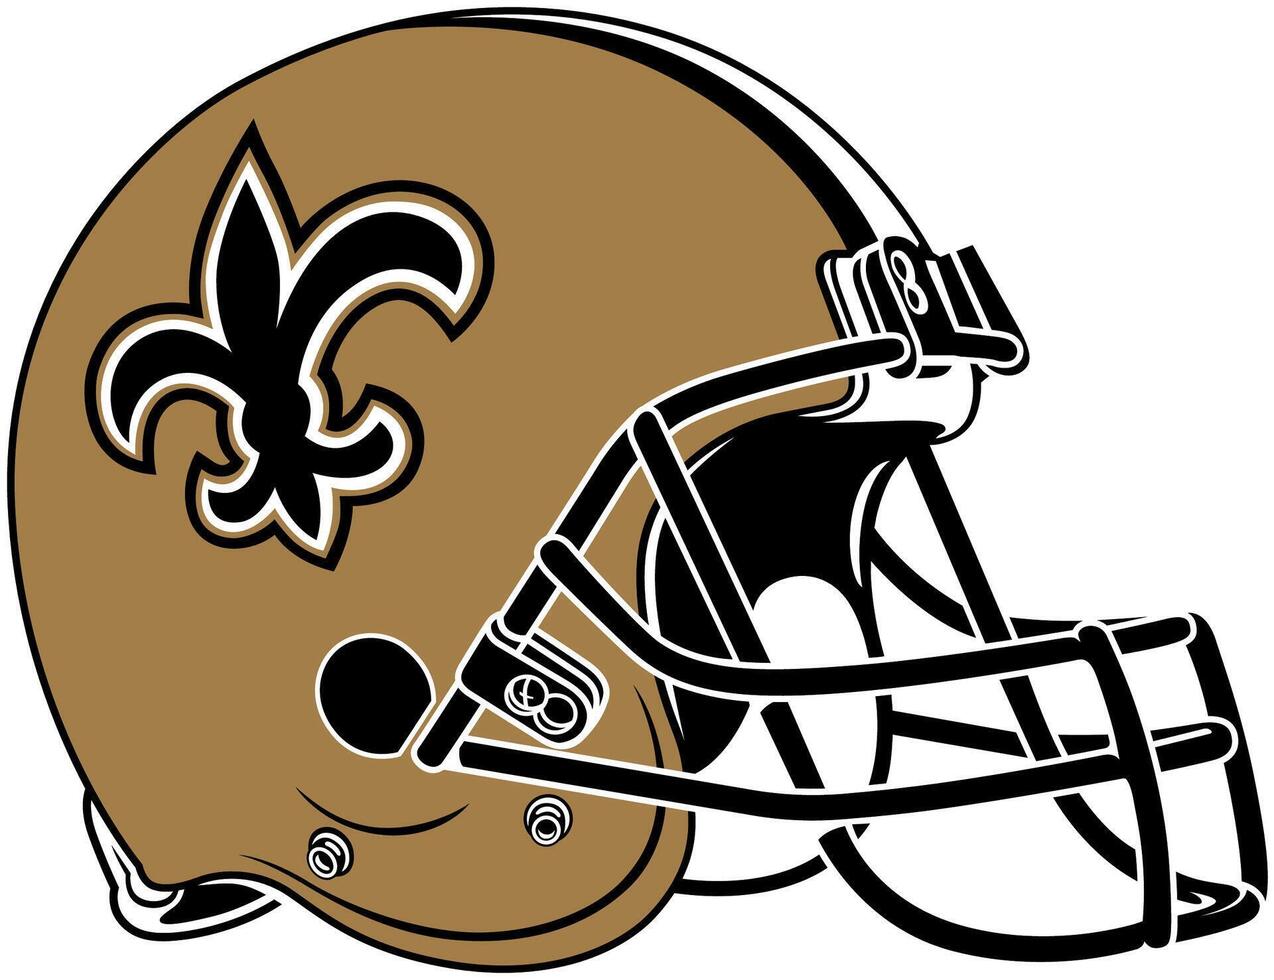 el marrón casco de el nuevo Orleans santos americano fútbol americano equipo vector